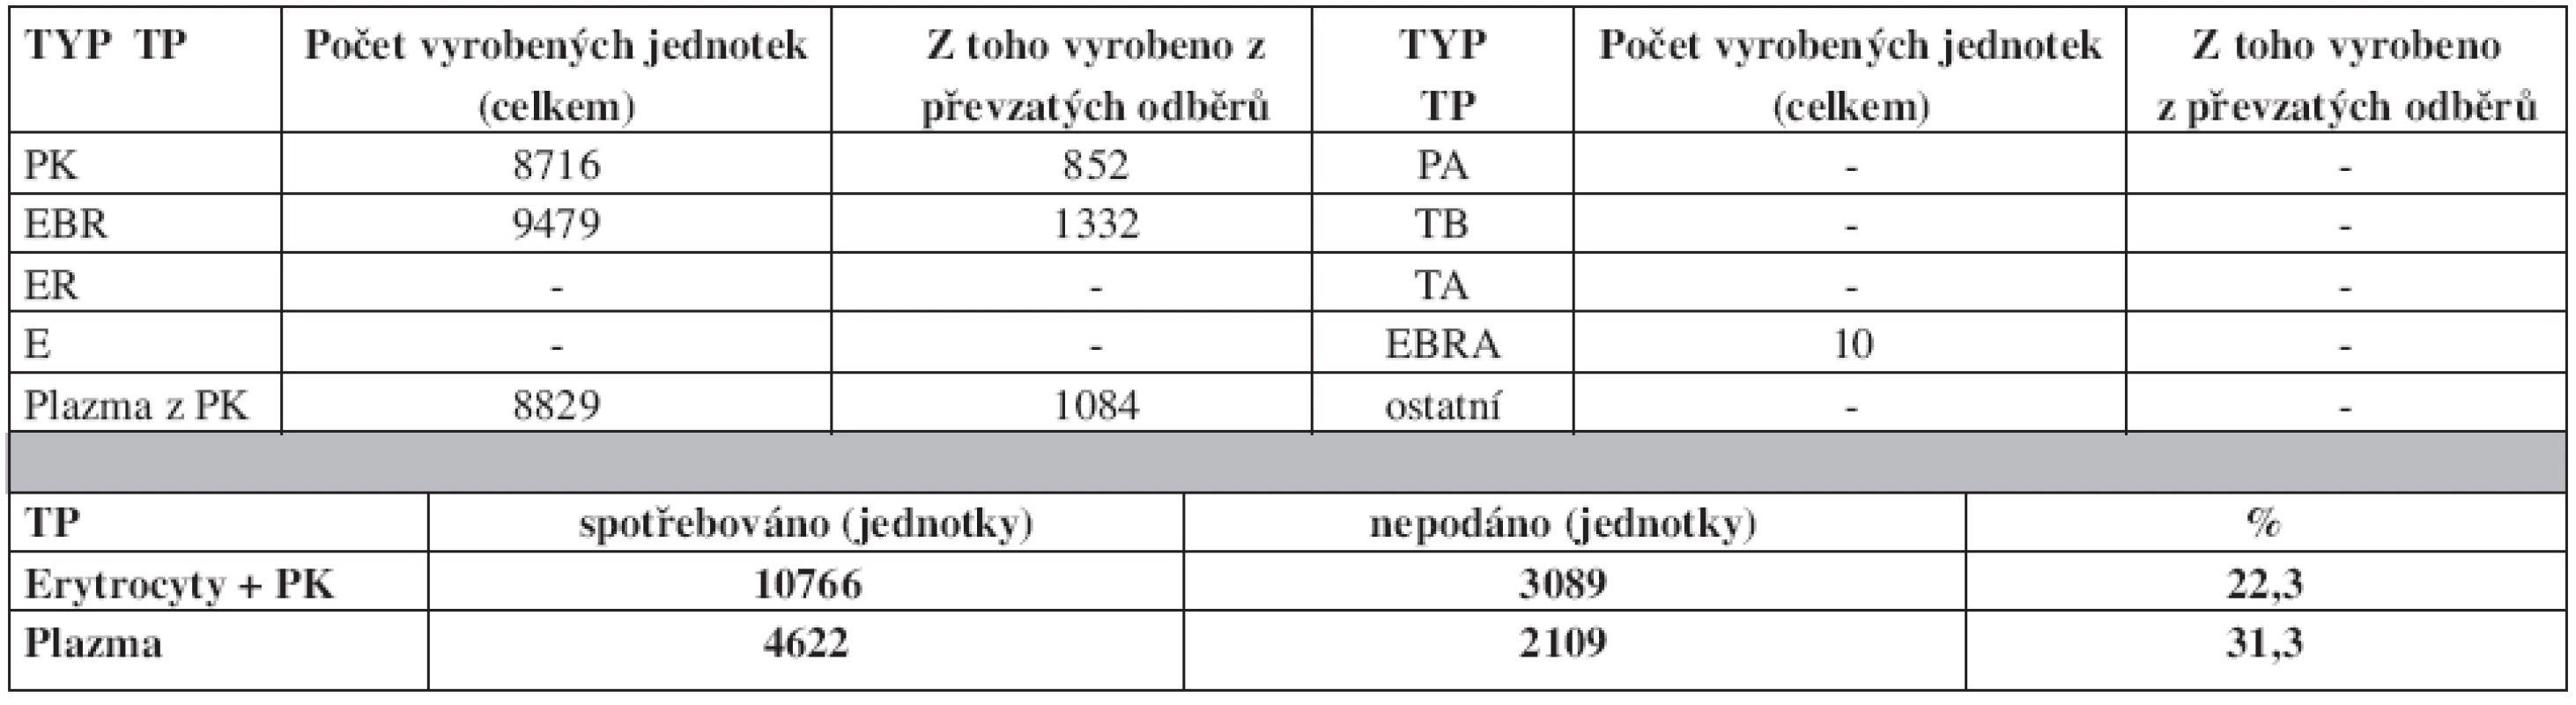 Autotransfuze v České republice v roce 2007 – transfuzní přípravky